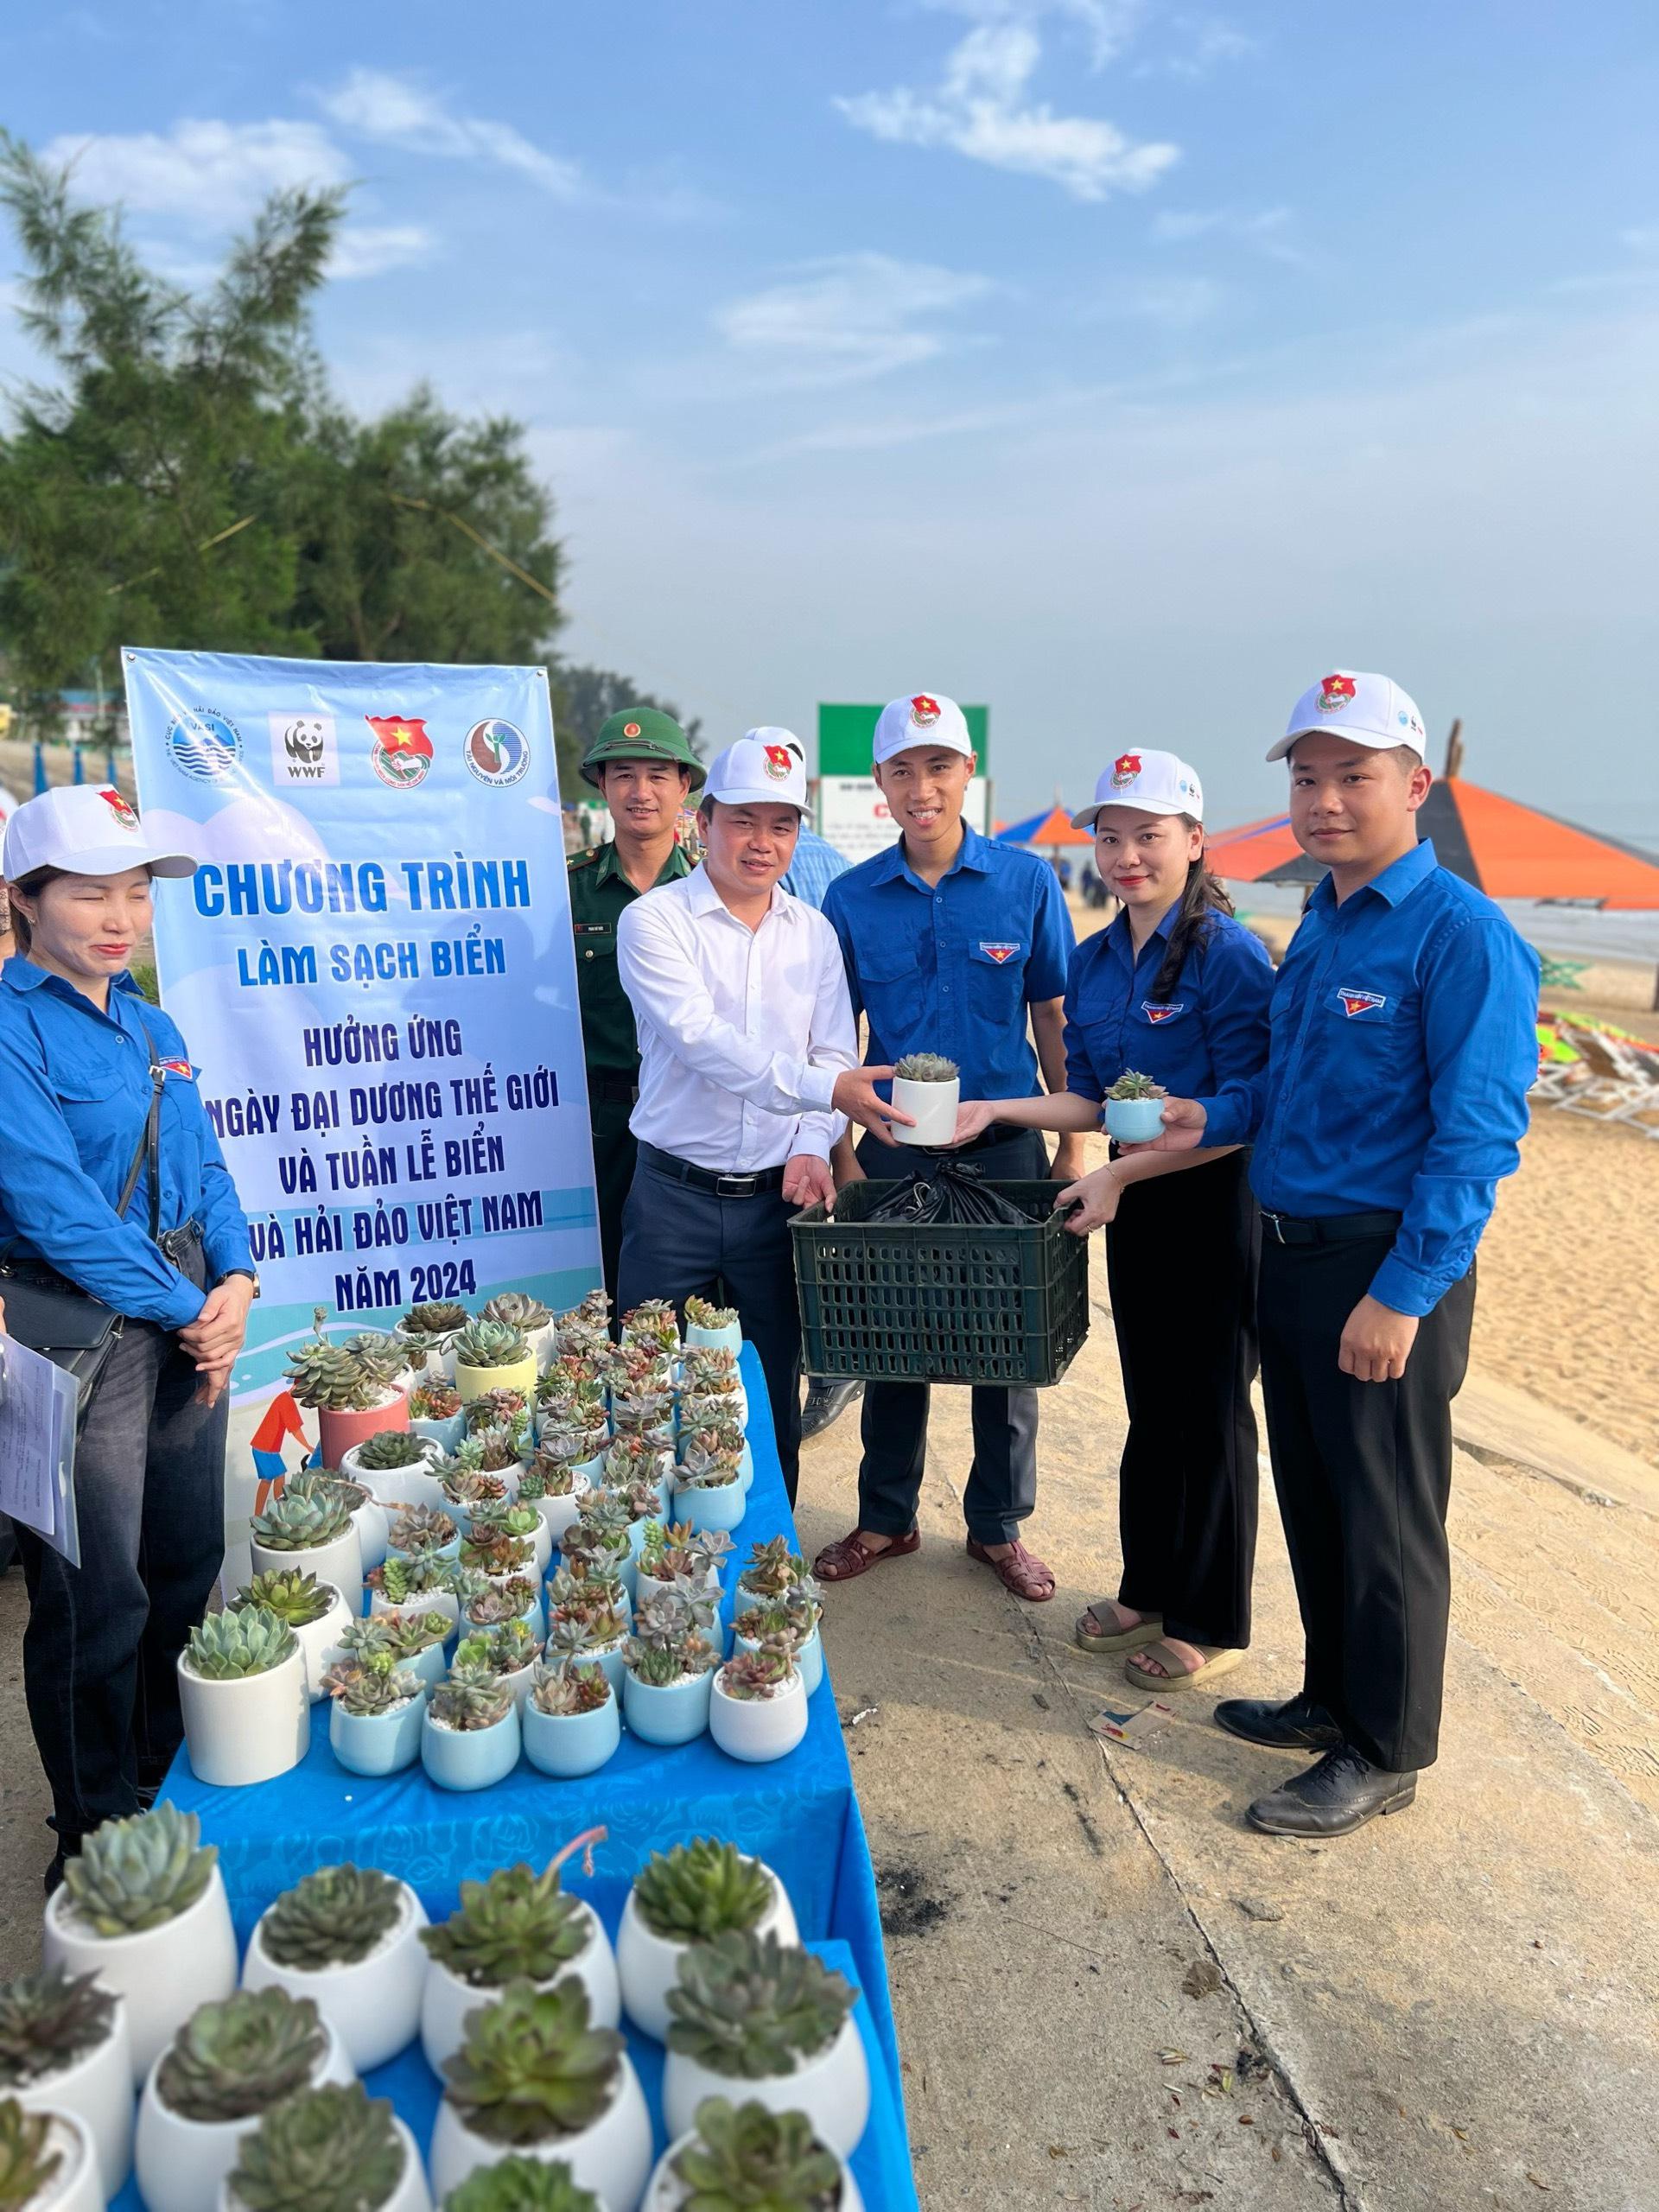 Đoàn thanh niên Cục Biển và Hải đảo Việt Nam: Ra quân làm sạch biển hưởng ứng Tuần lễ biển đảo Việt Nam 2024 - ảnh 5